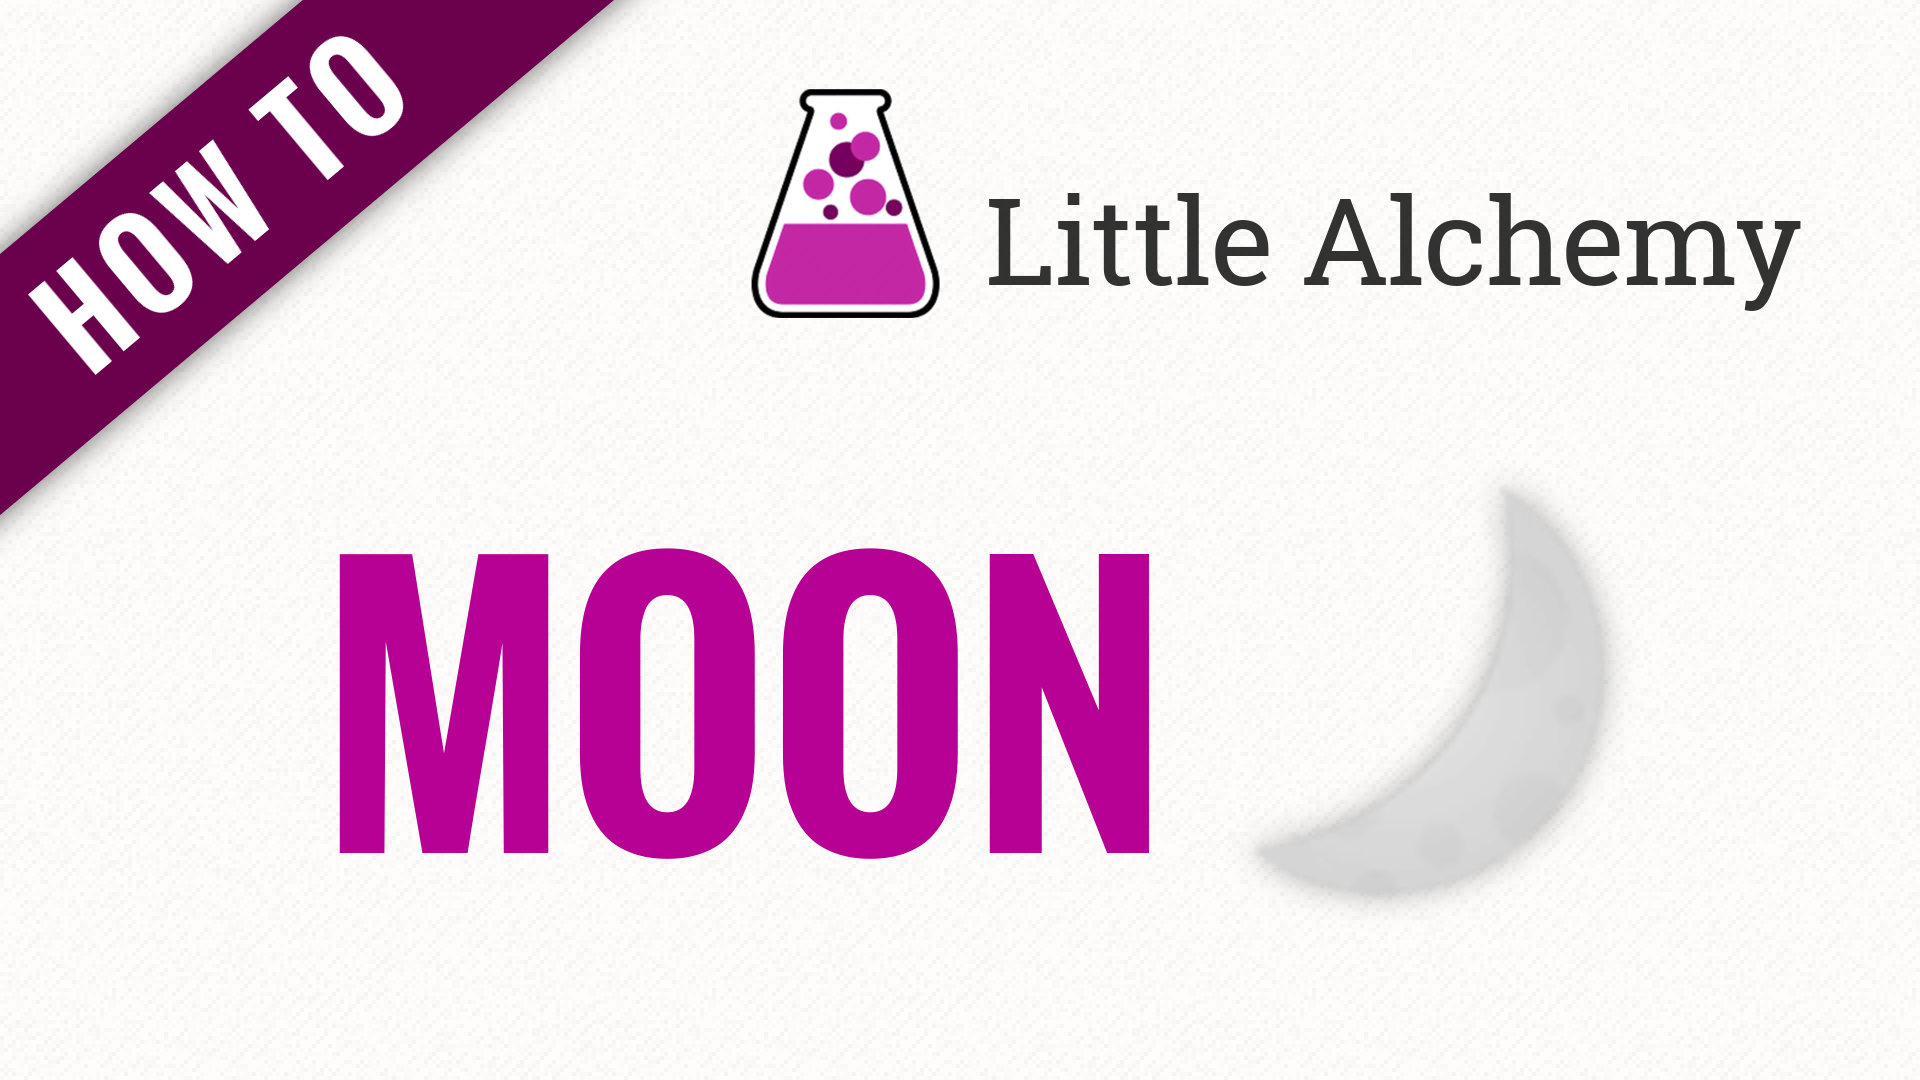 Little Alchemy Mond